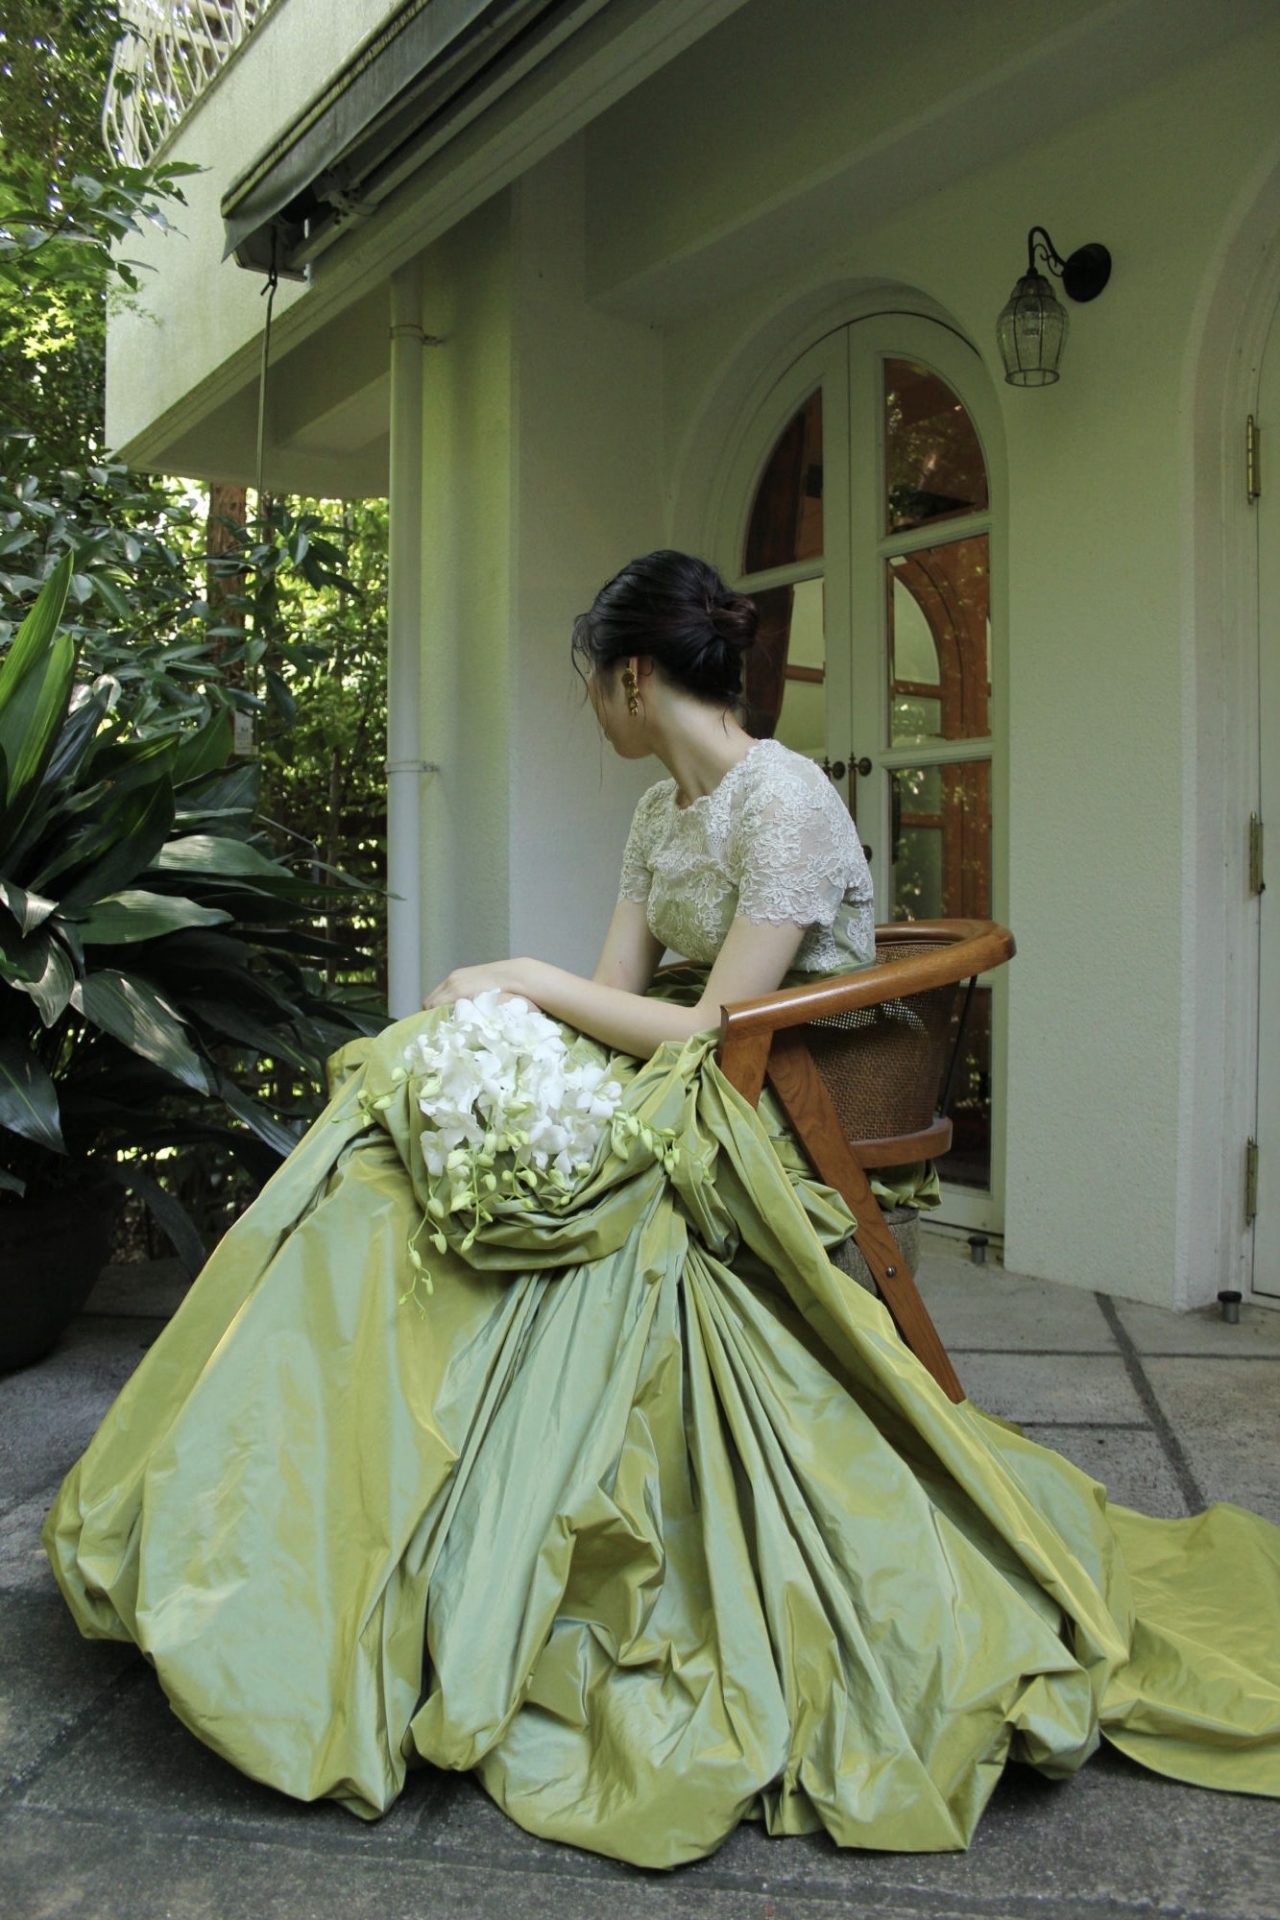 ザナンザンハウスにオススメのグリーンのカラードレスのご紹介